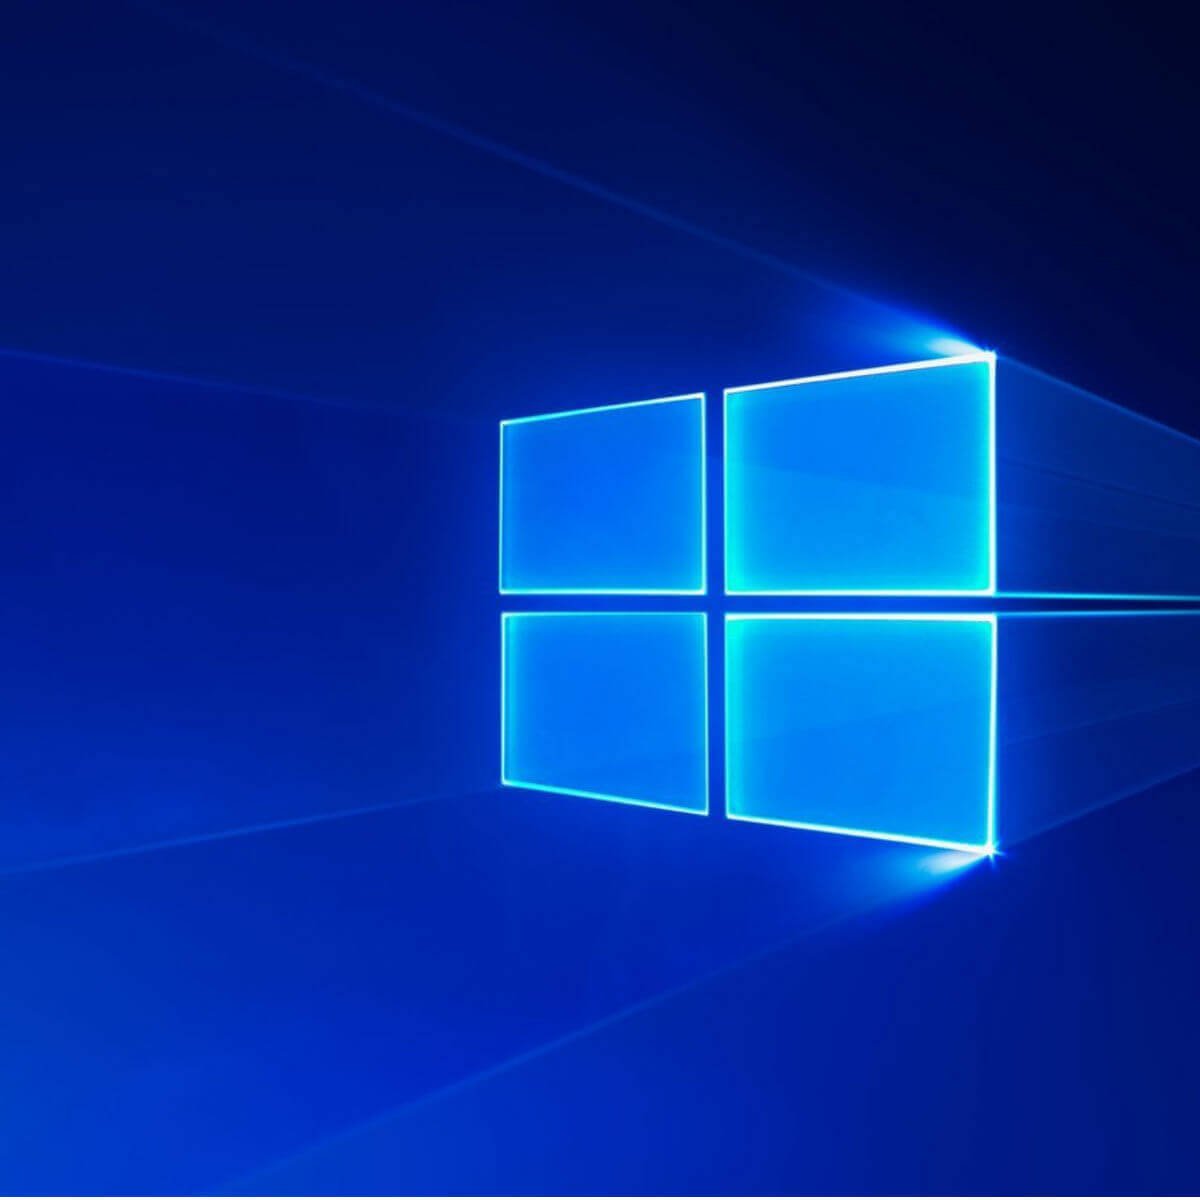 Windows 10 Update Security tab fix